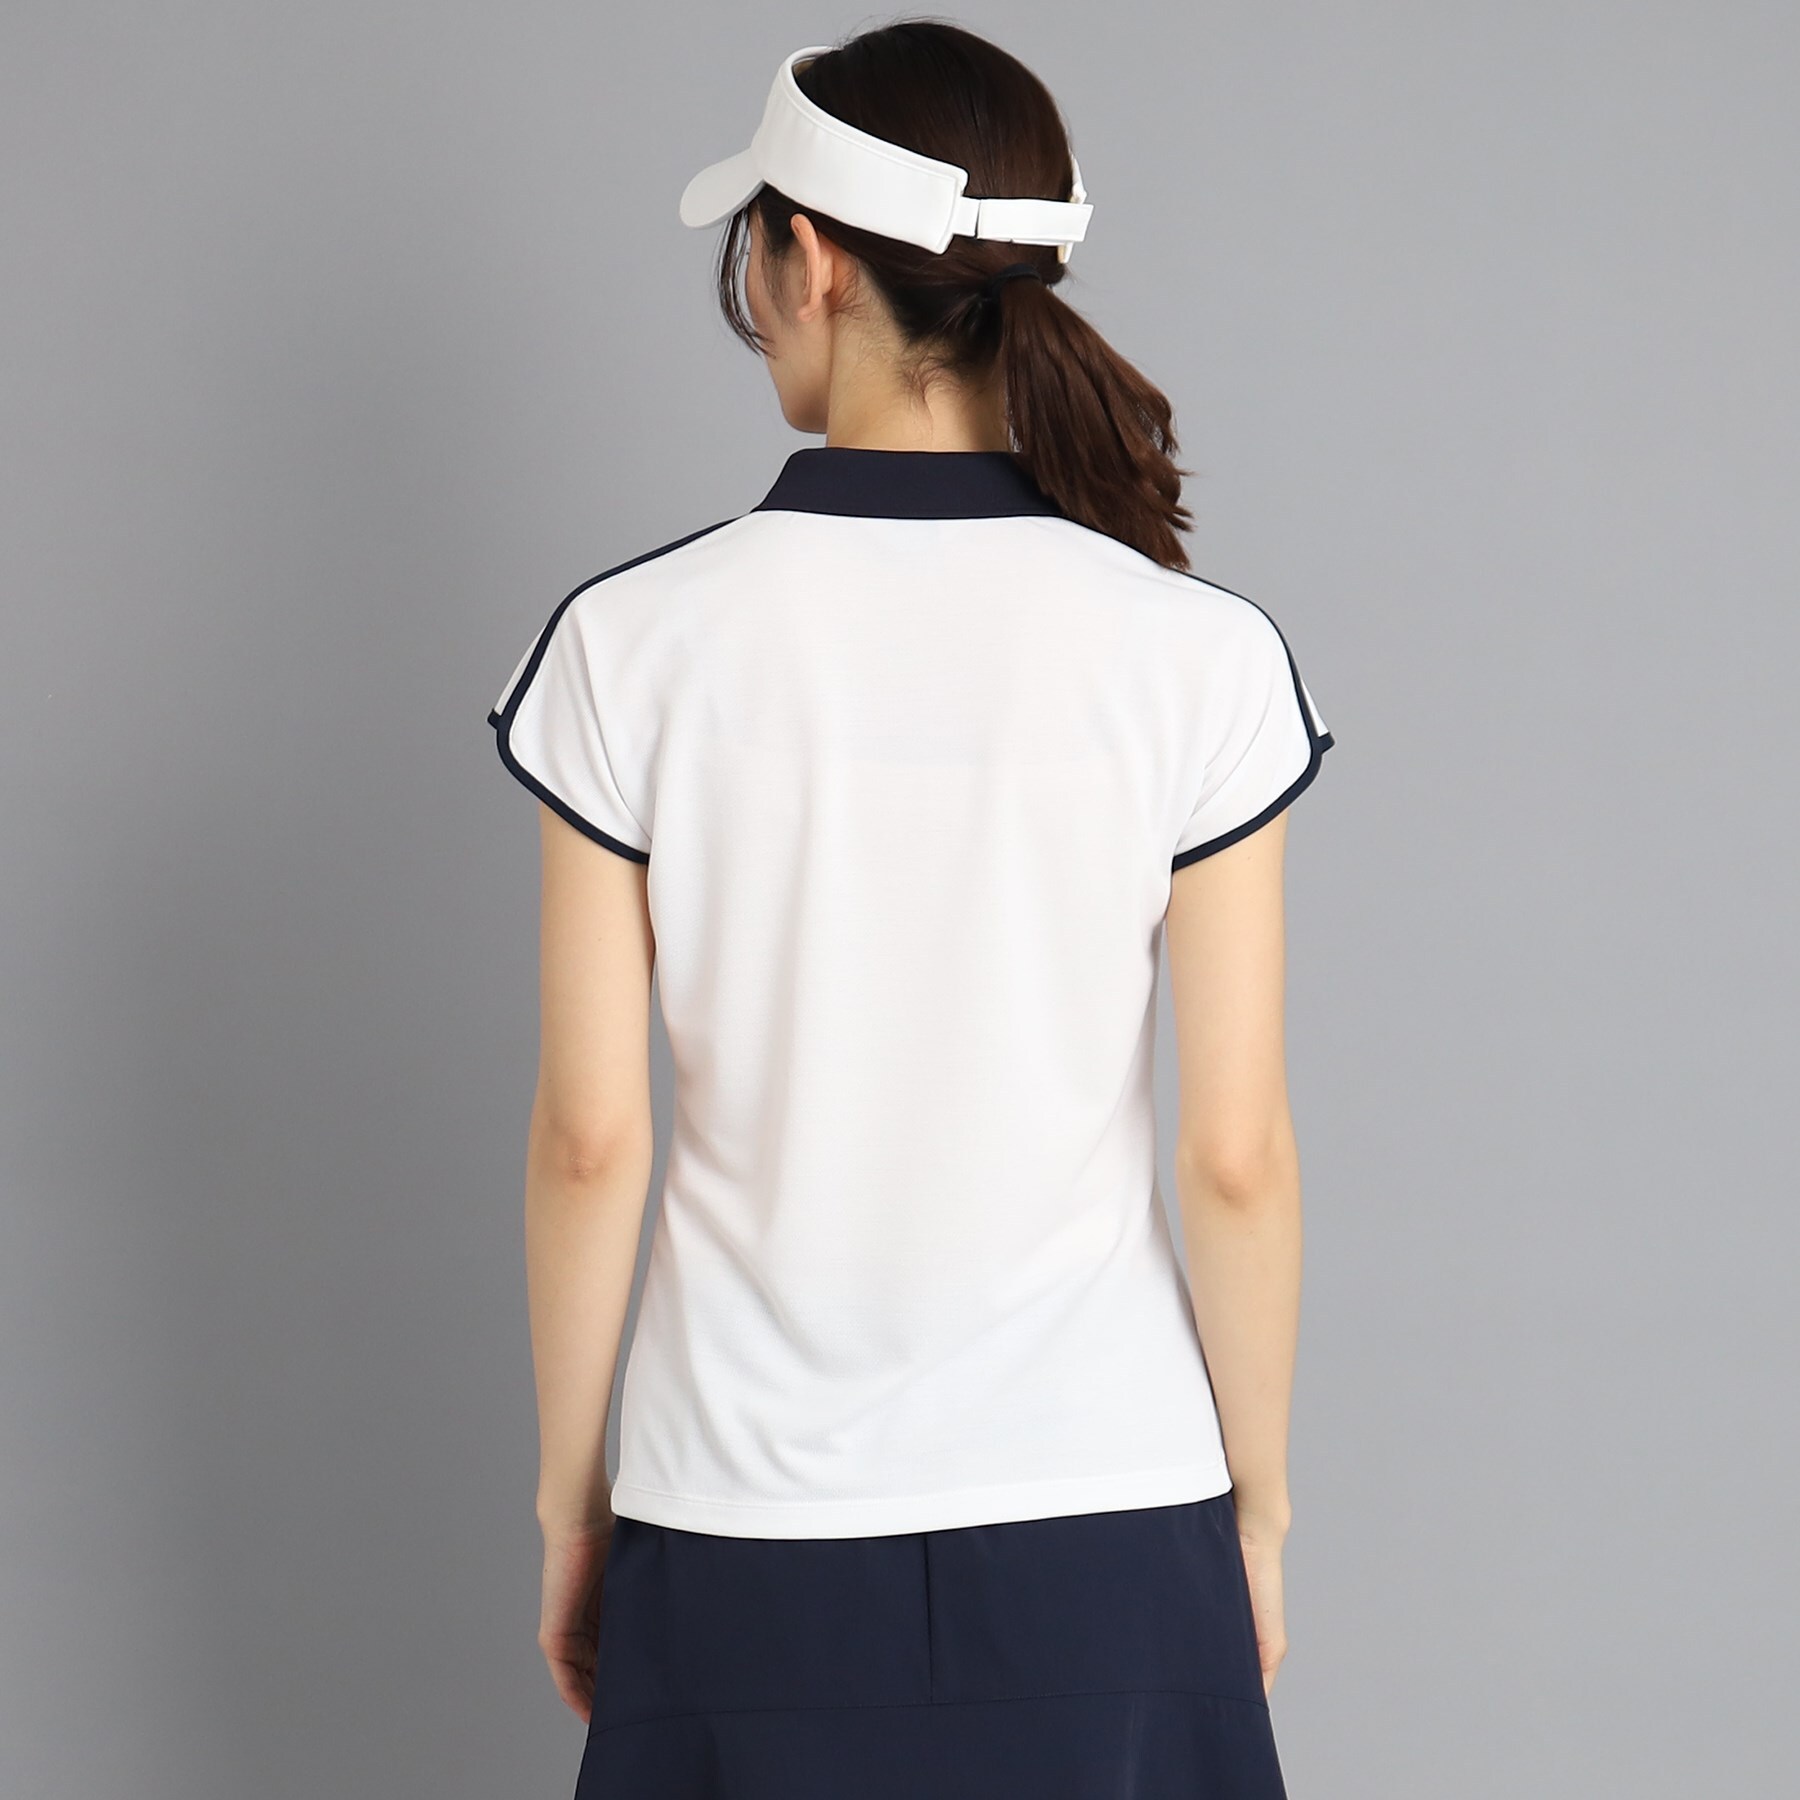 アダバット(レディース)(adabat(Ladies))の【日本製】ショルダーラインデザイン ハーフジップポロシャツ3